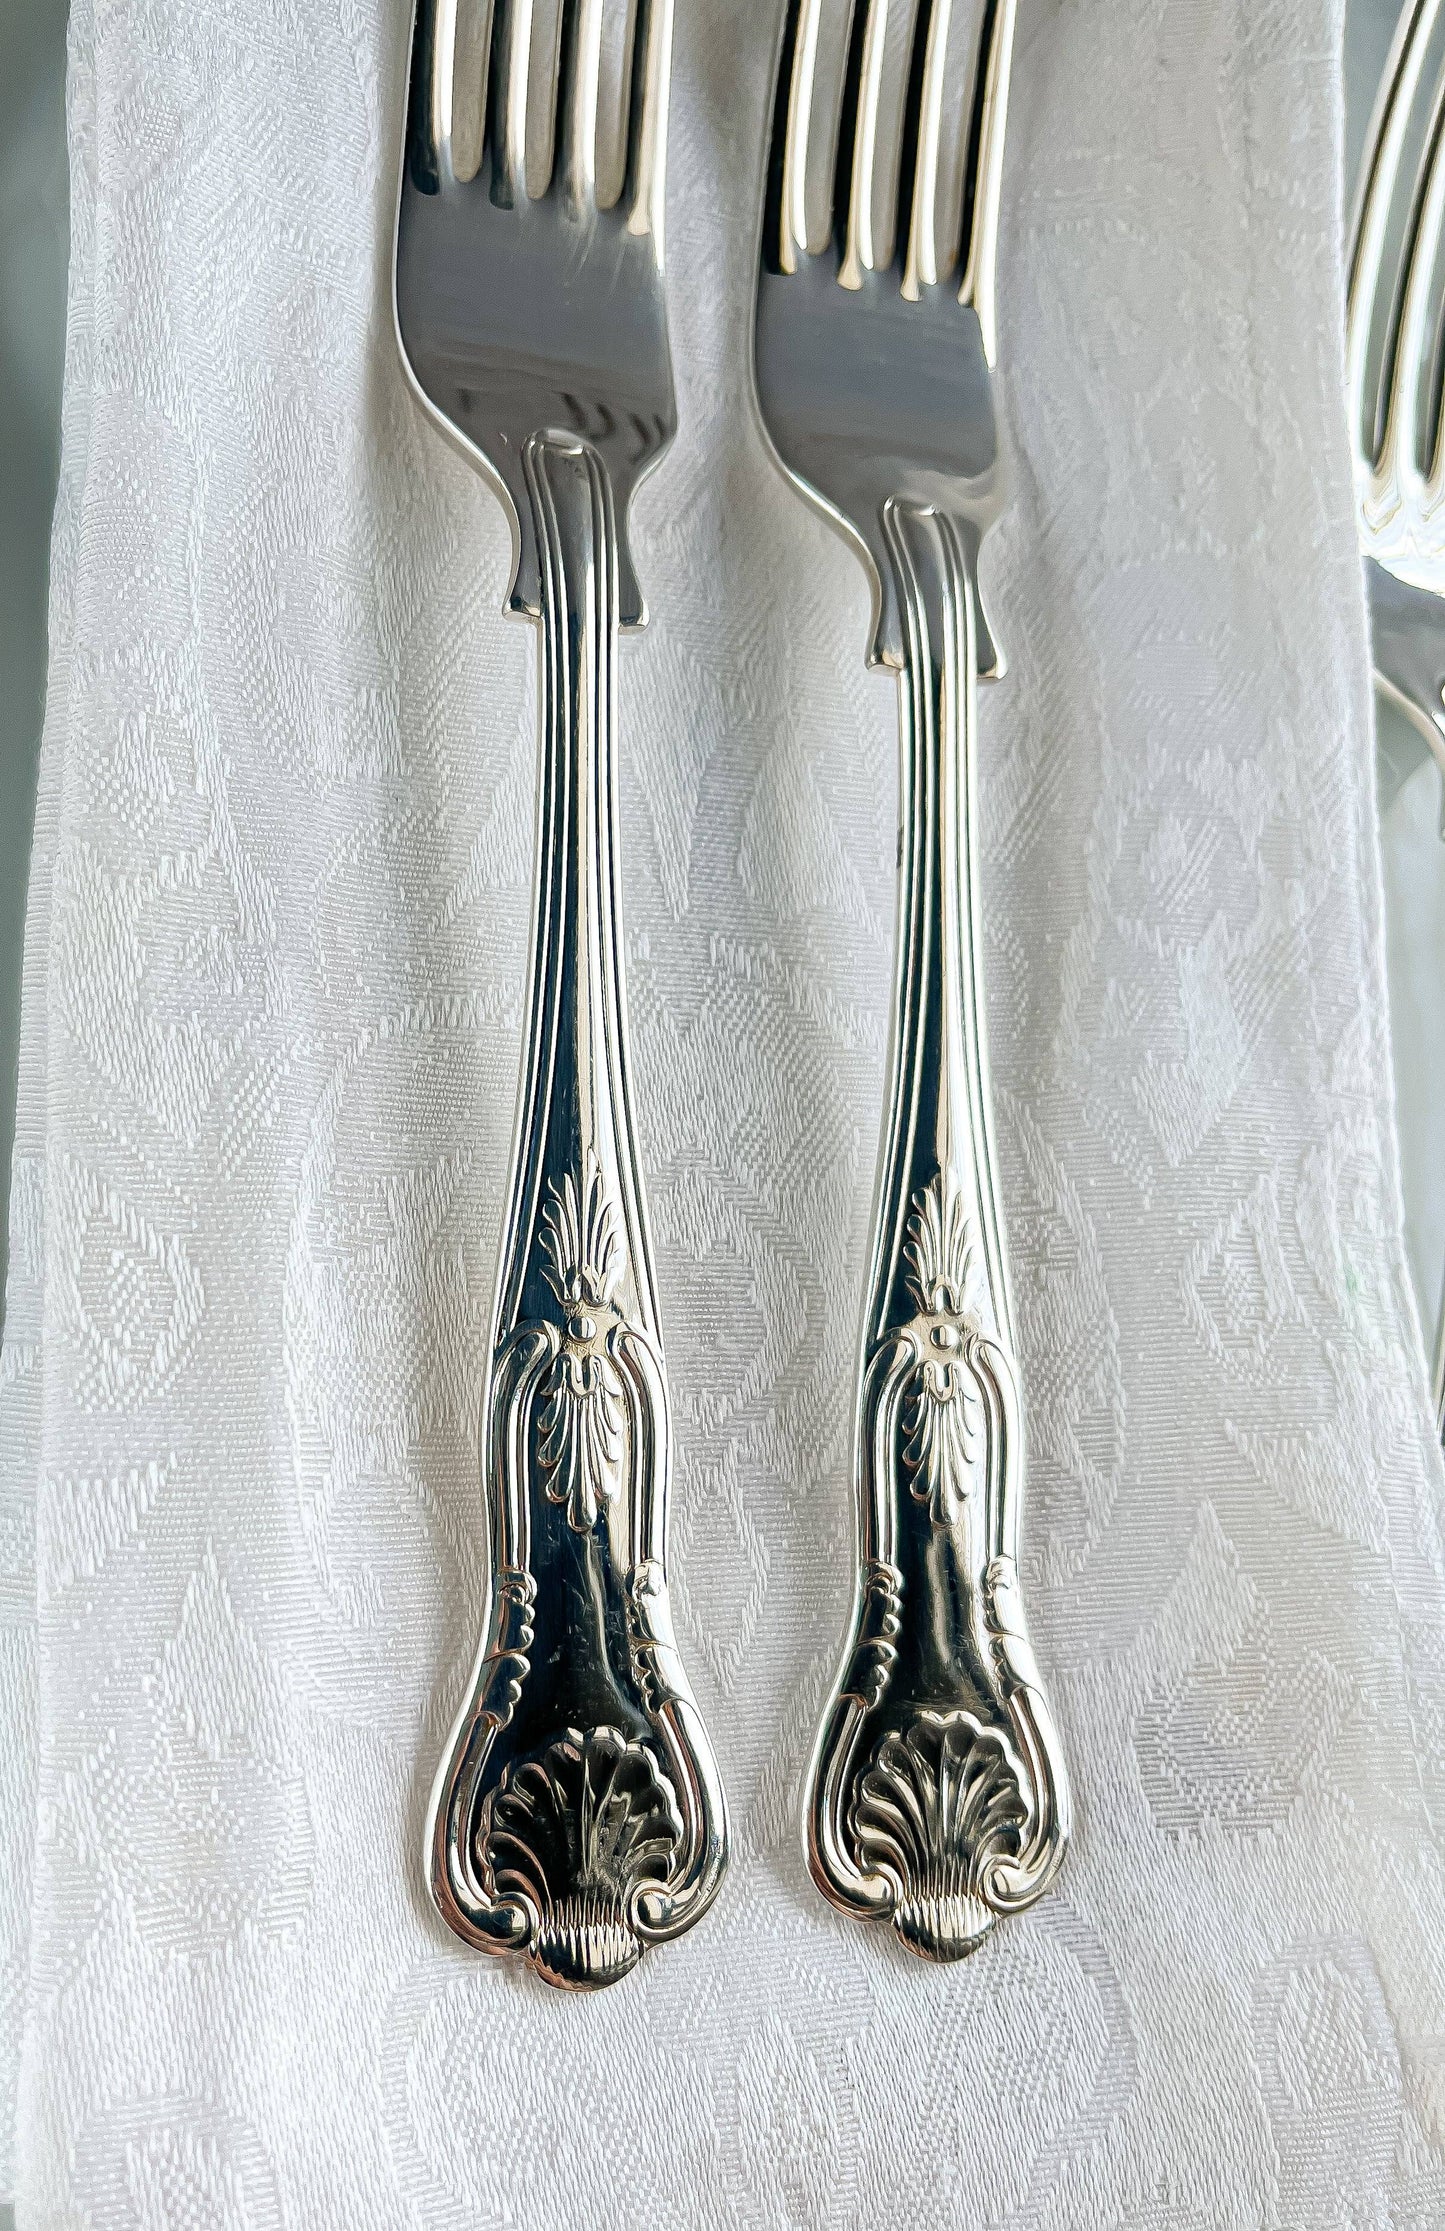 Sheffield Cutlery Co. Set of 6 Dinner Forks - ‘Kings’ Pattern - SOSC Home